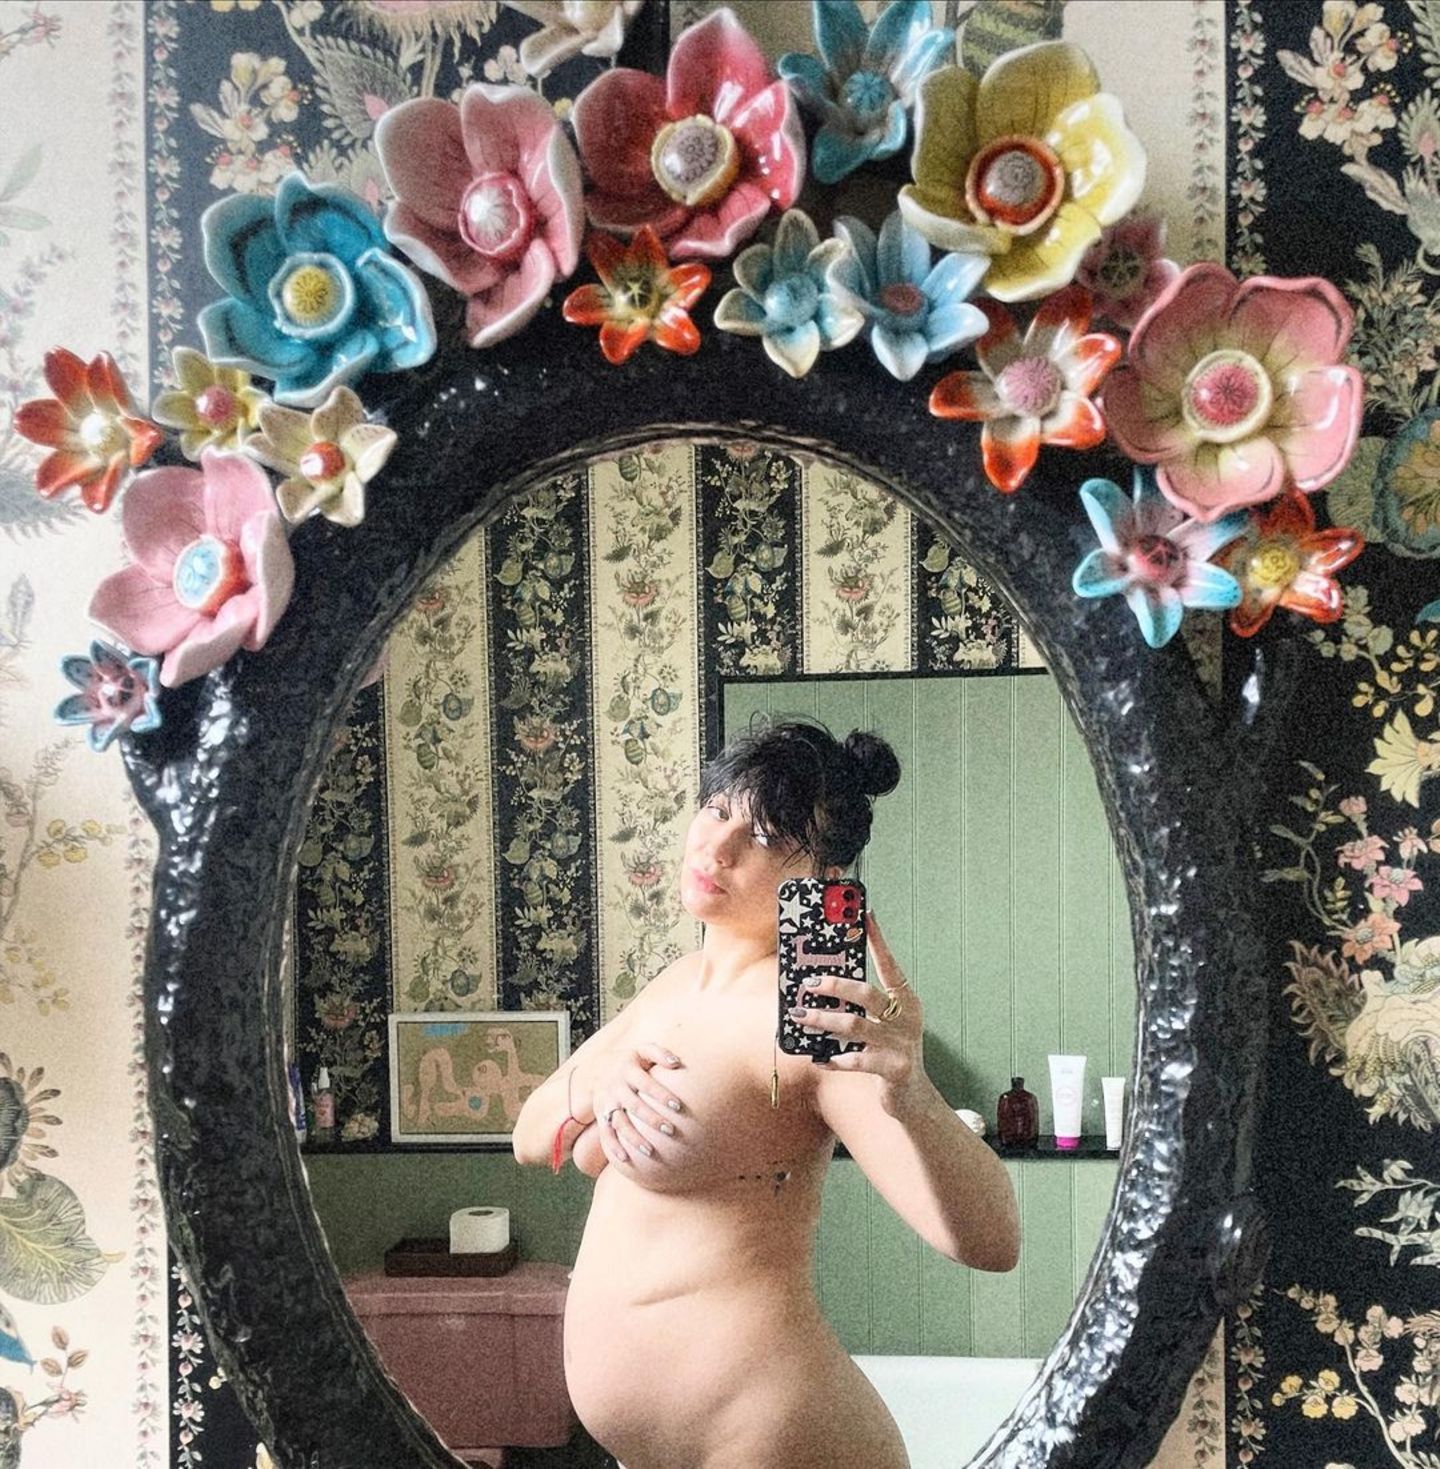 Komplett nackt und mit rundem Babybauch posiert Daisy Lowe auf Instagram. Die Djane bedeckt ihre Oberweite mit der Hand. Dazu kommen die florale Tapete und der romantische Spiegel, Klopapier und ein Bilderrahmen – hier weiß man gar nicht, wo man zuerst hinschauen soll! 